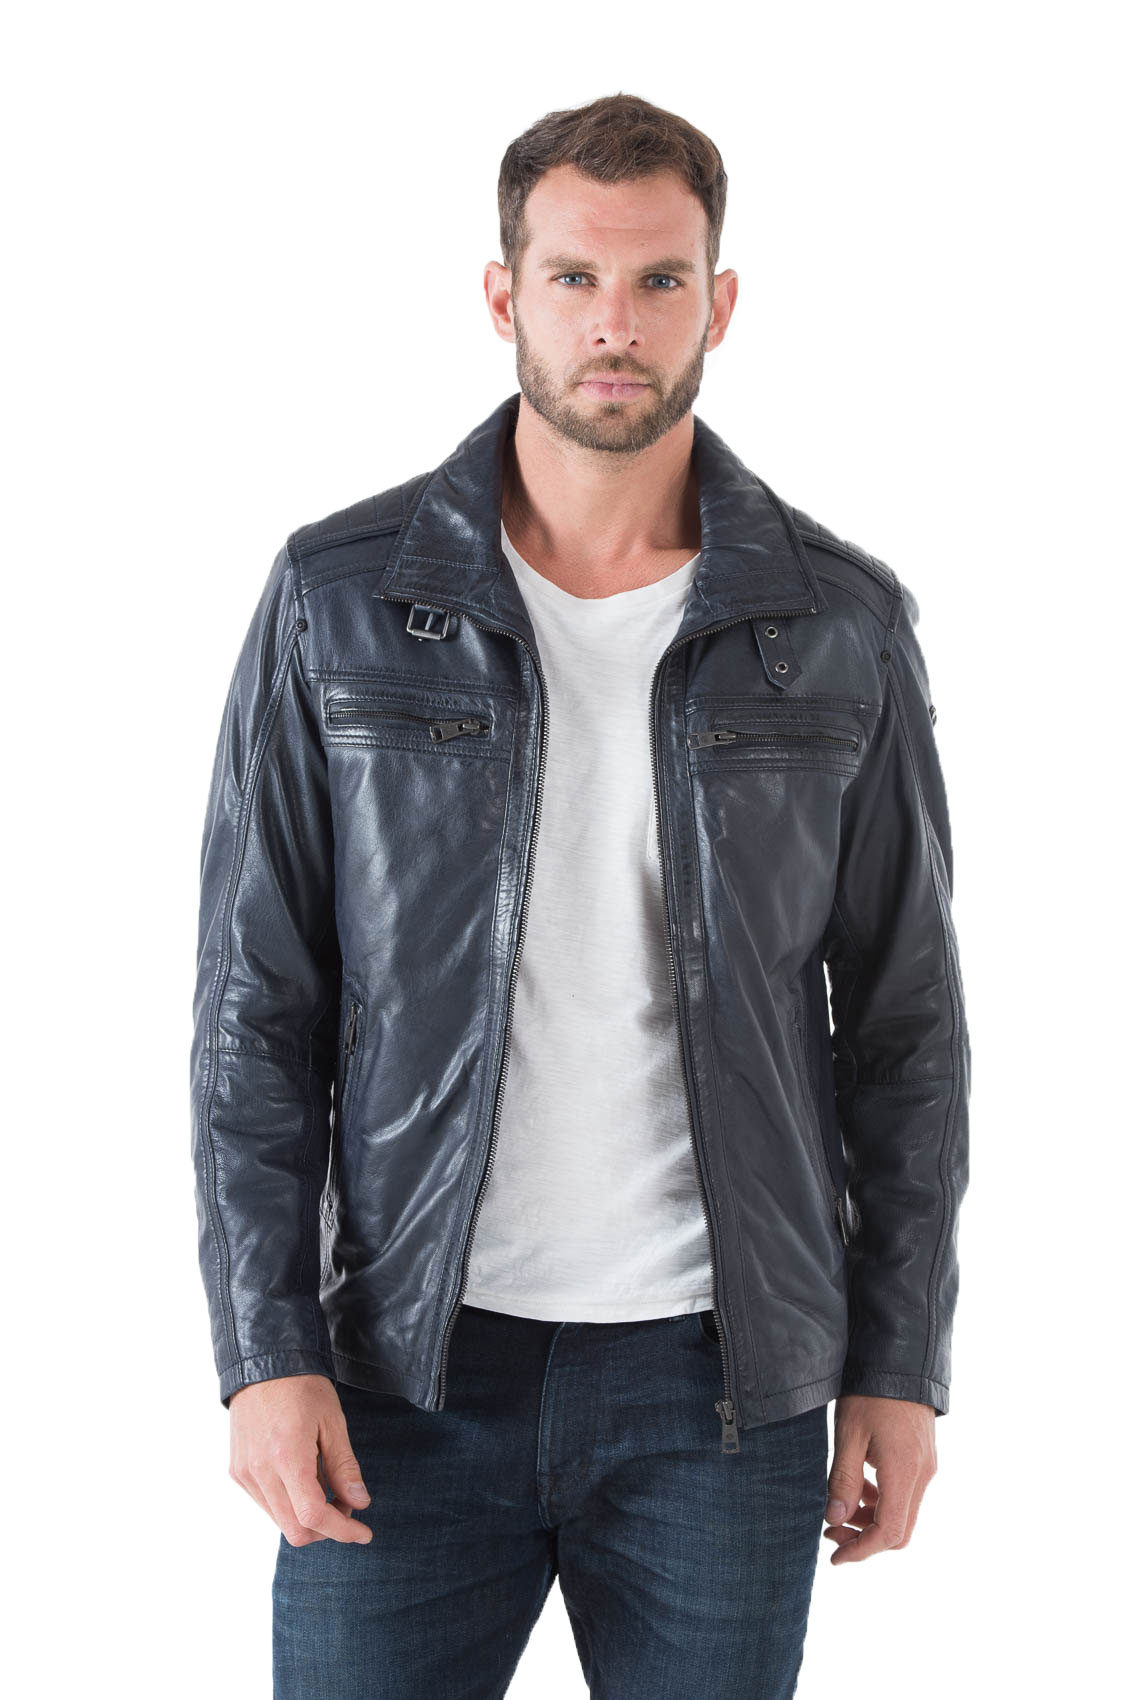 Blouson cuir homme noir 51705 classique col chemise couvrant ouatiné hiver face